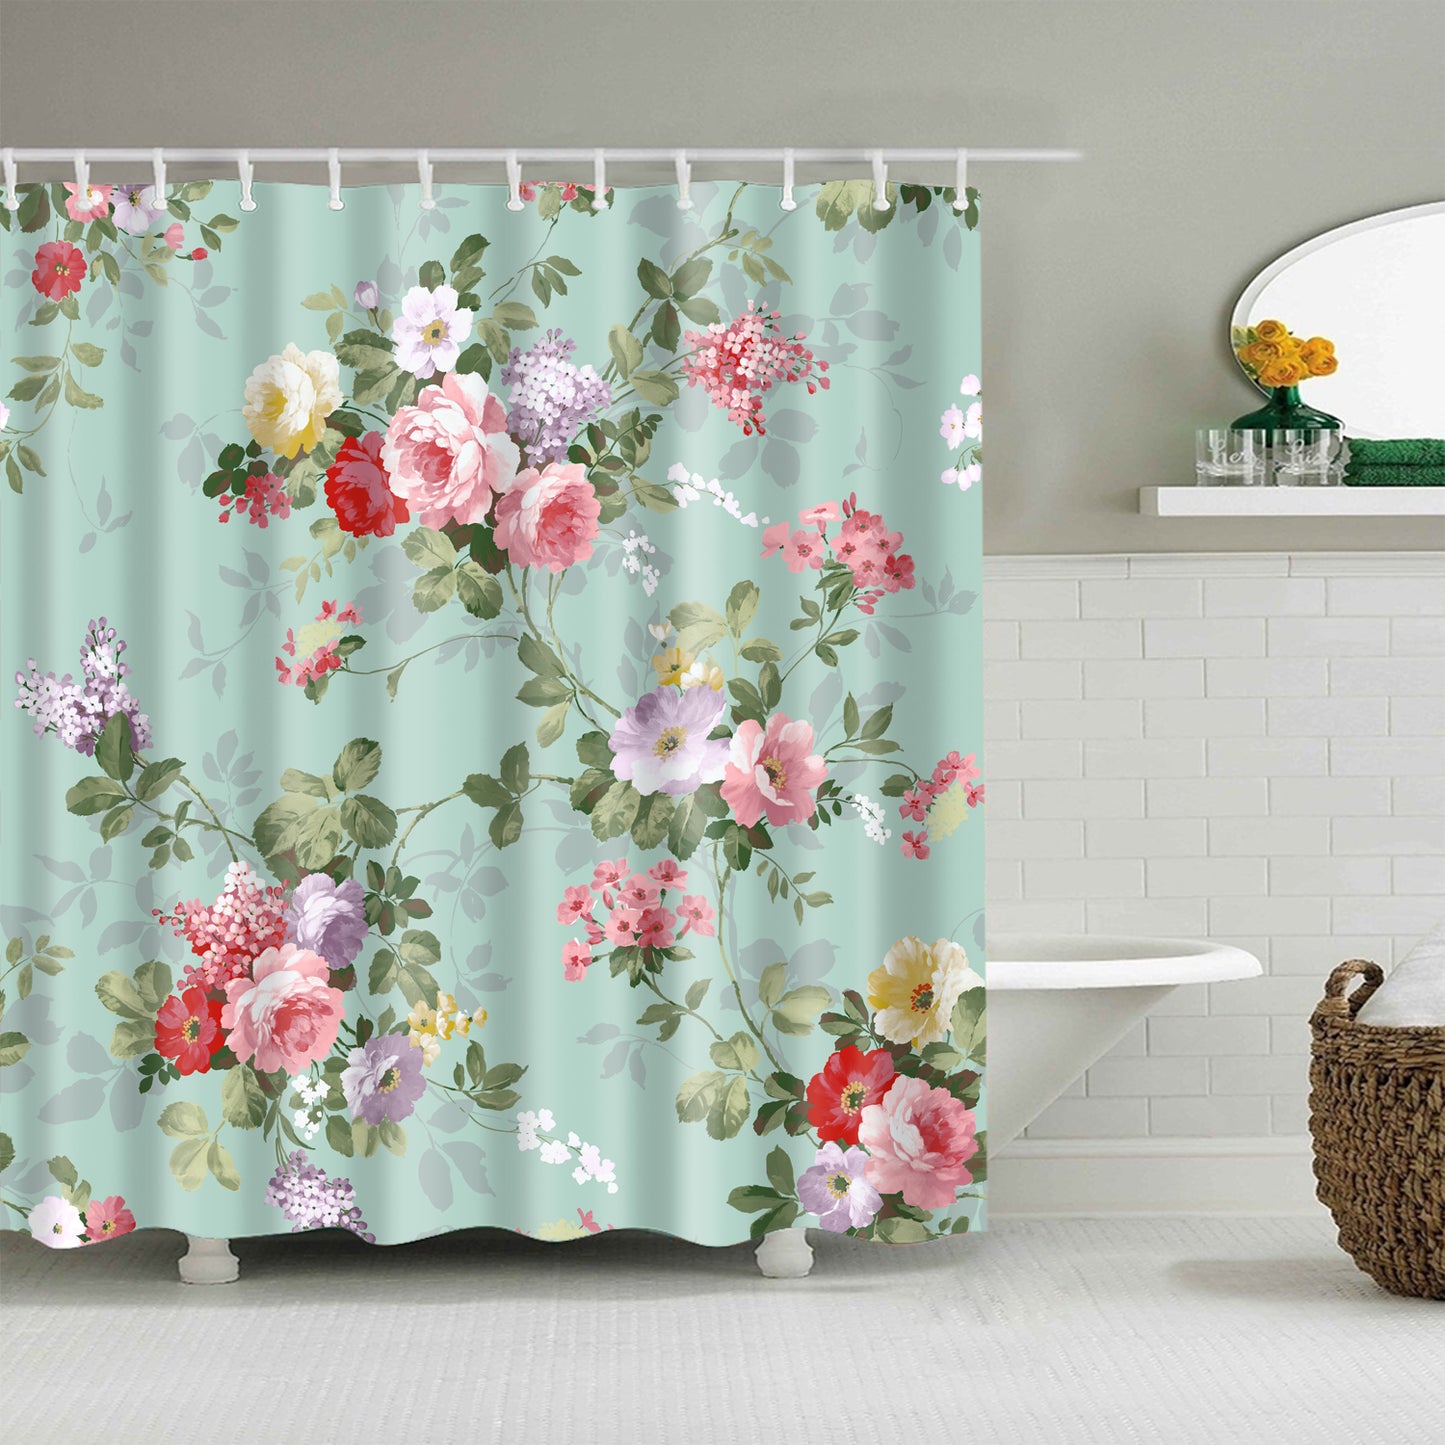 Teal Backdrop Pink Rose Flower Shower Curtain